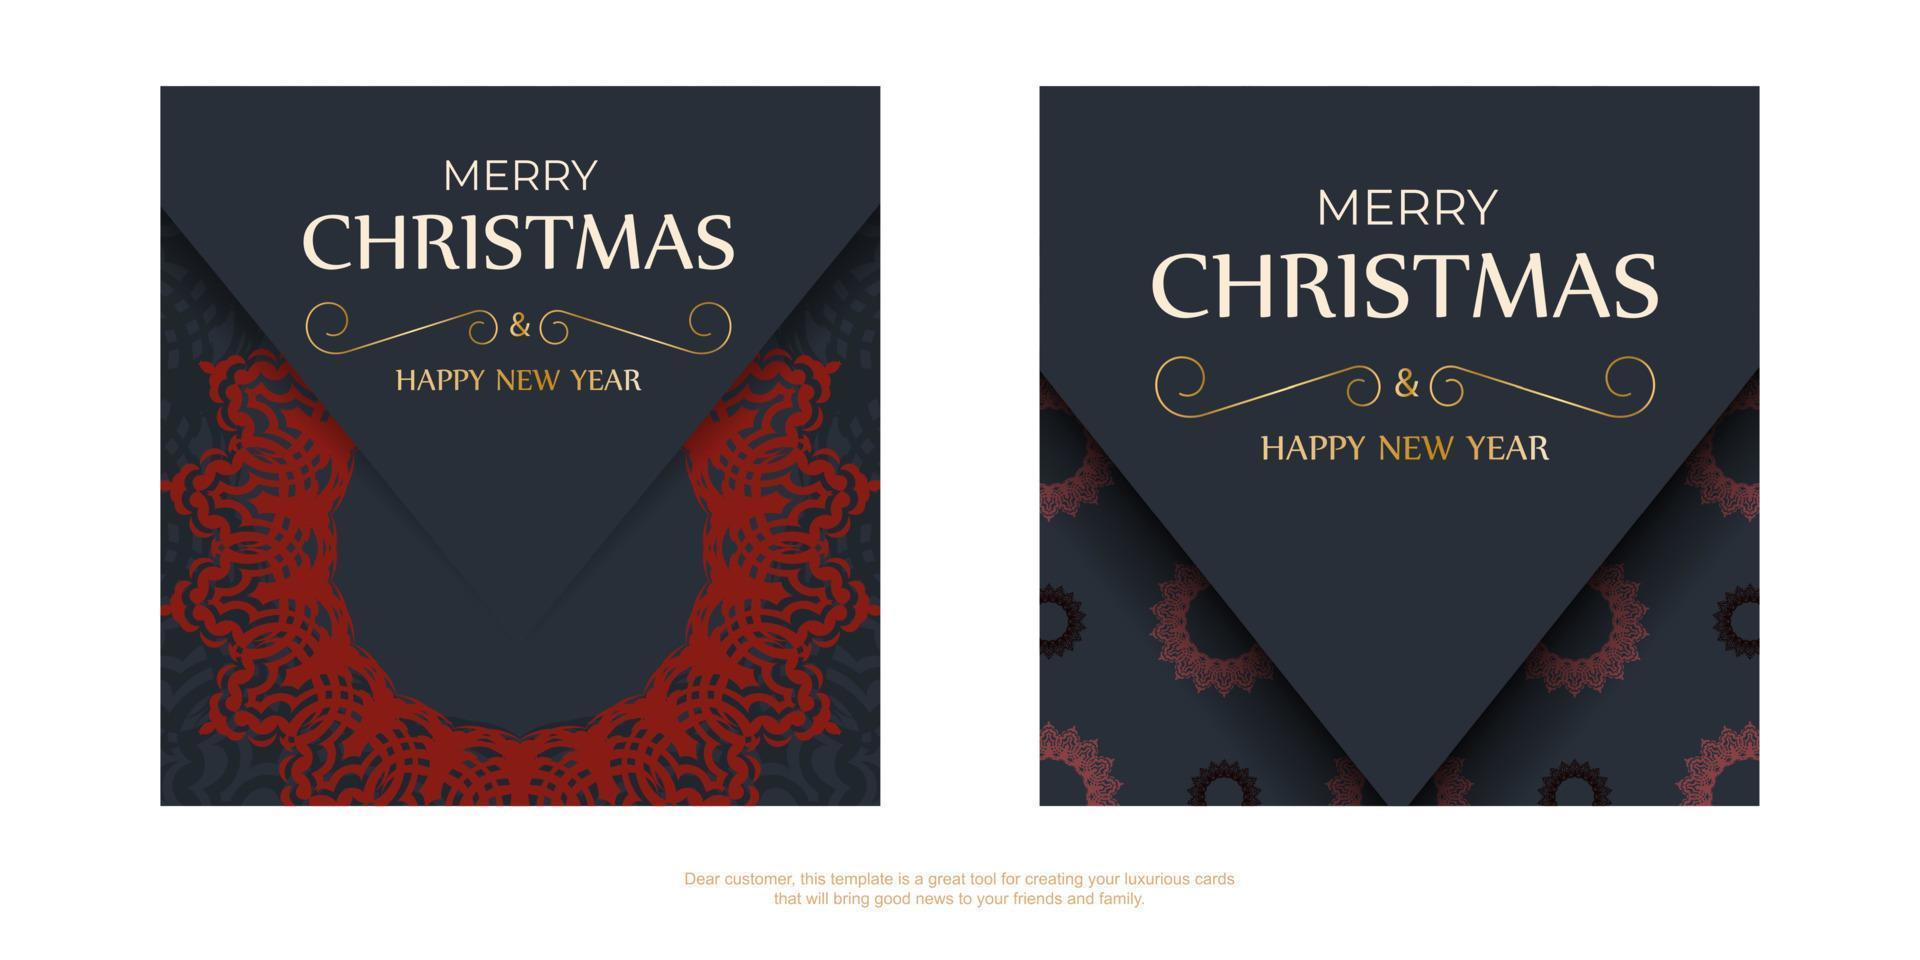 conception de carte postale joyeux noël en niveaux de gris avec ornement d'hiver. affiche de vecteur bonne année et motifs rouges.